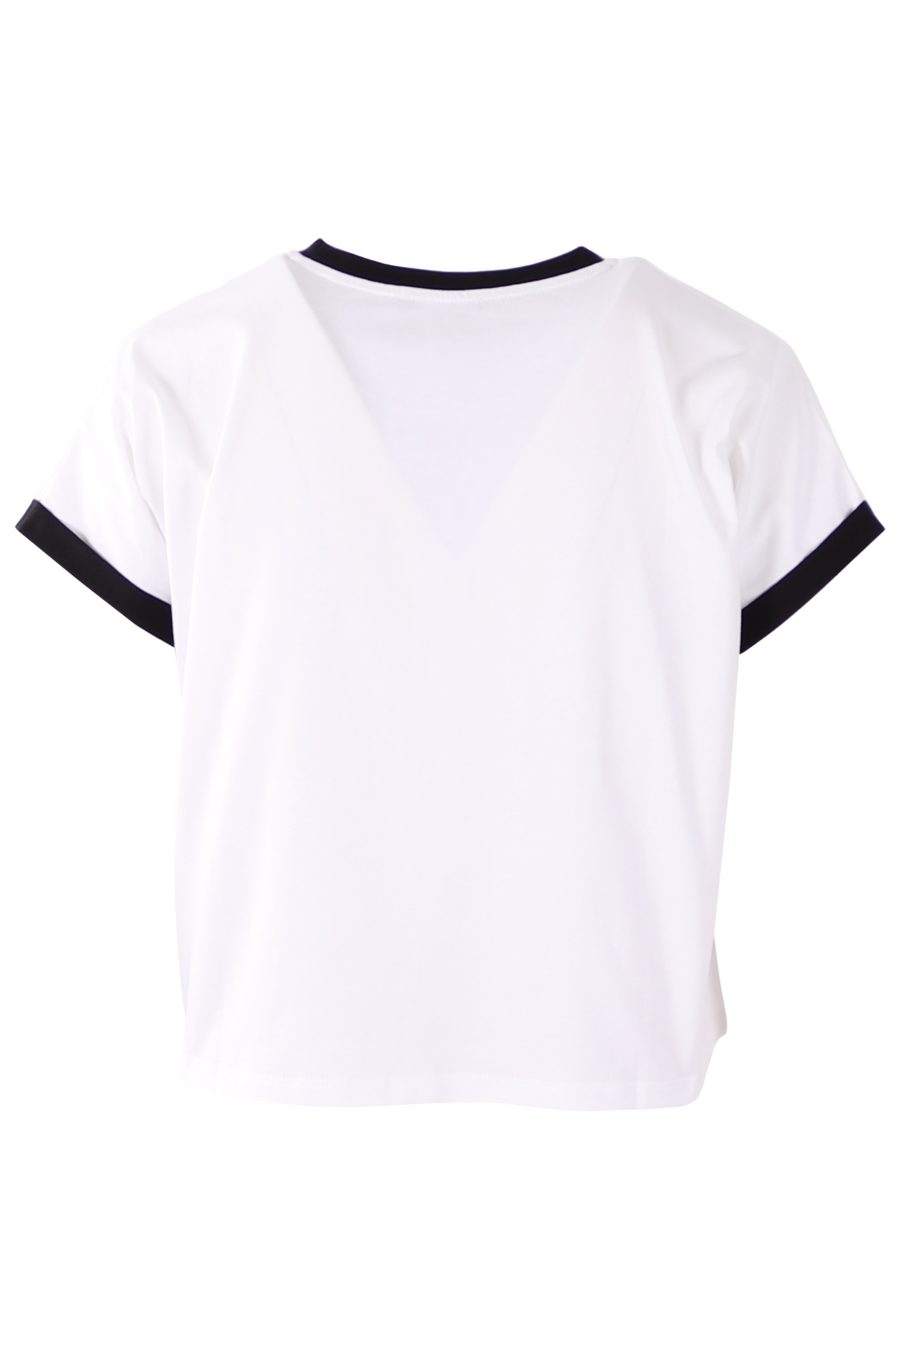 Camiseta corta Balmain blanca con logo flocado en negro - 236b191e17492d431c26d6287762905fe5ed4fc6